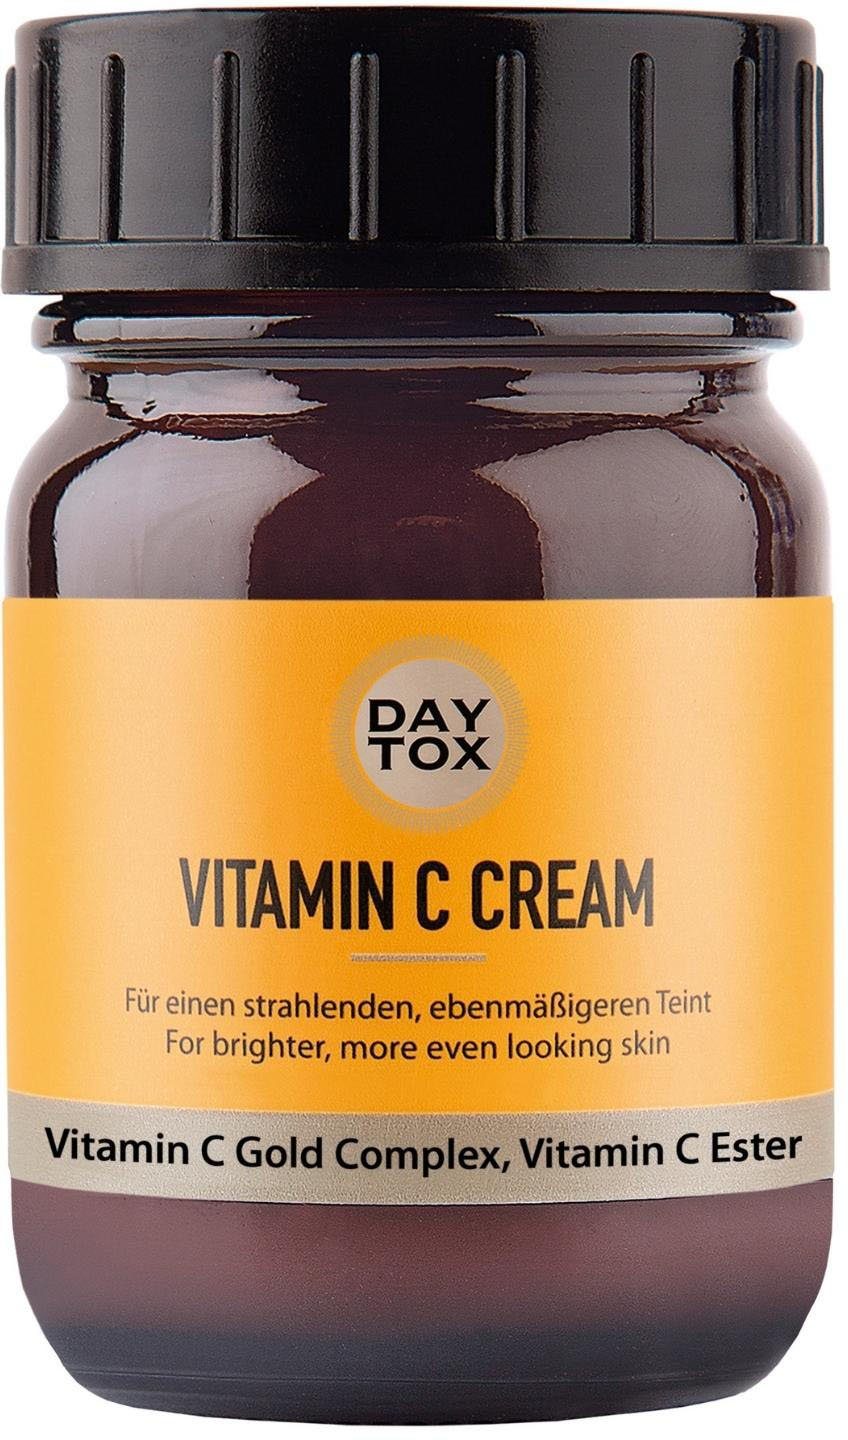 DAYTOX Gesichtspflege »Vitamin C Cream« online kaufen | OTTO